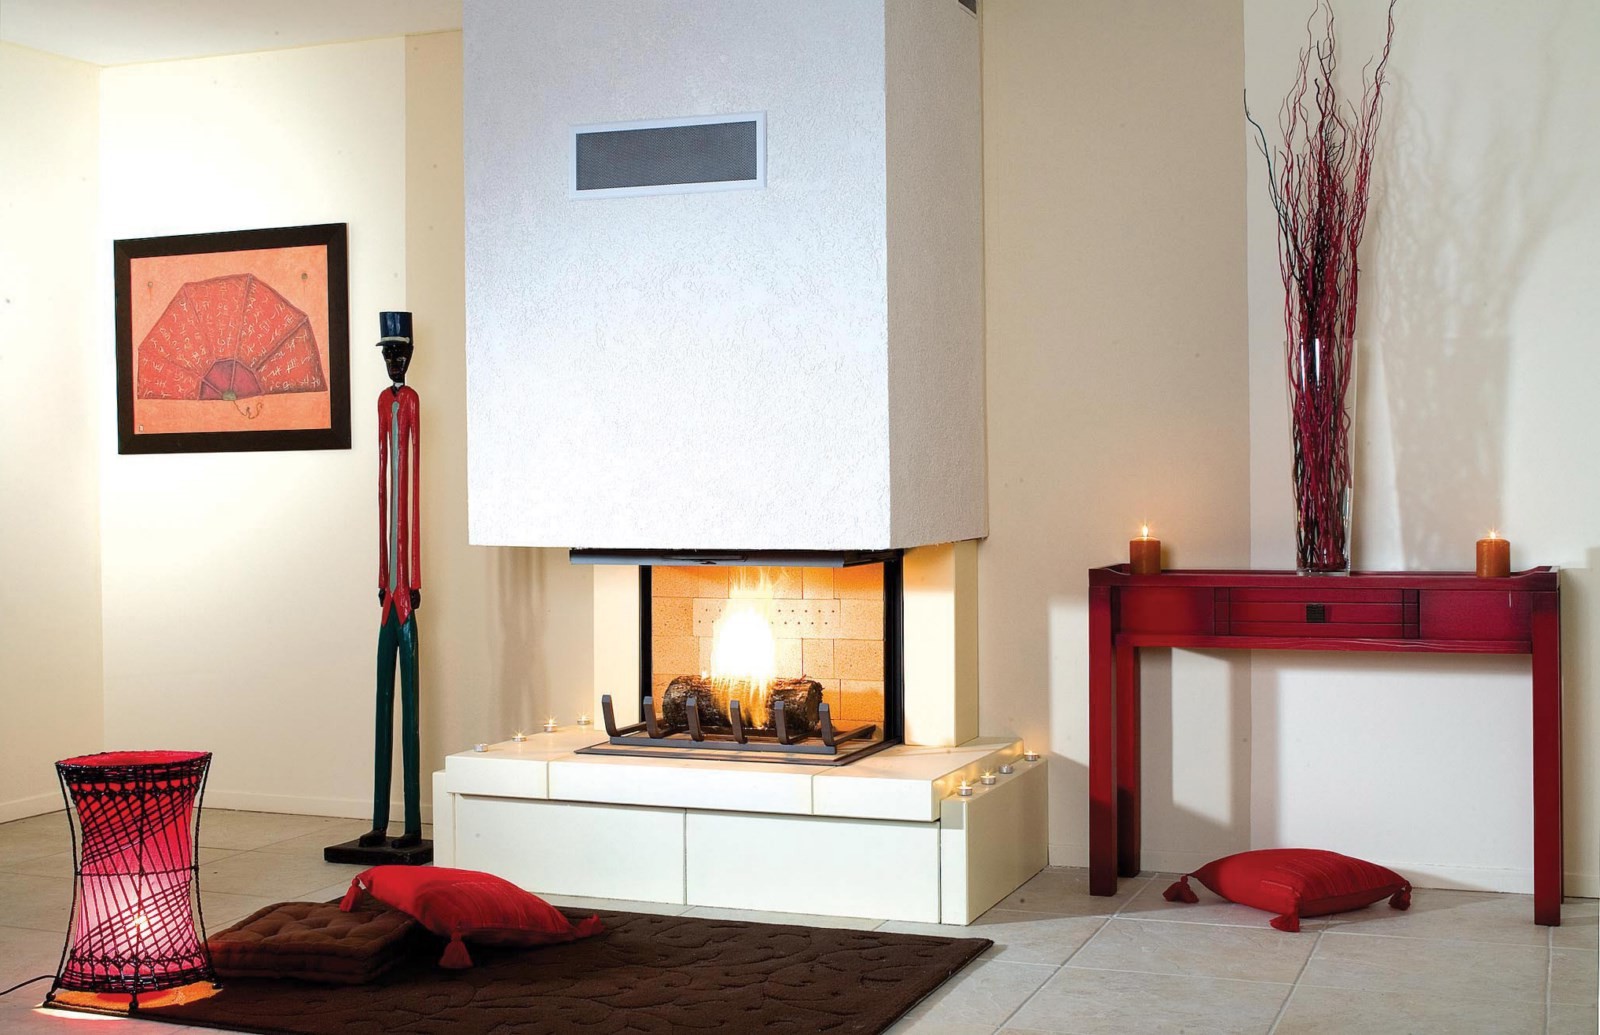 Камин в интерьере гостиной фото современный: стильные дизайнерские решения в квартире, последние модные тенденции